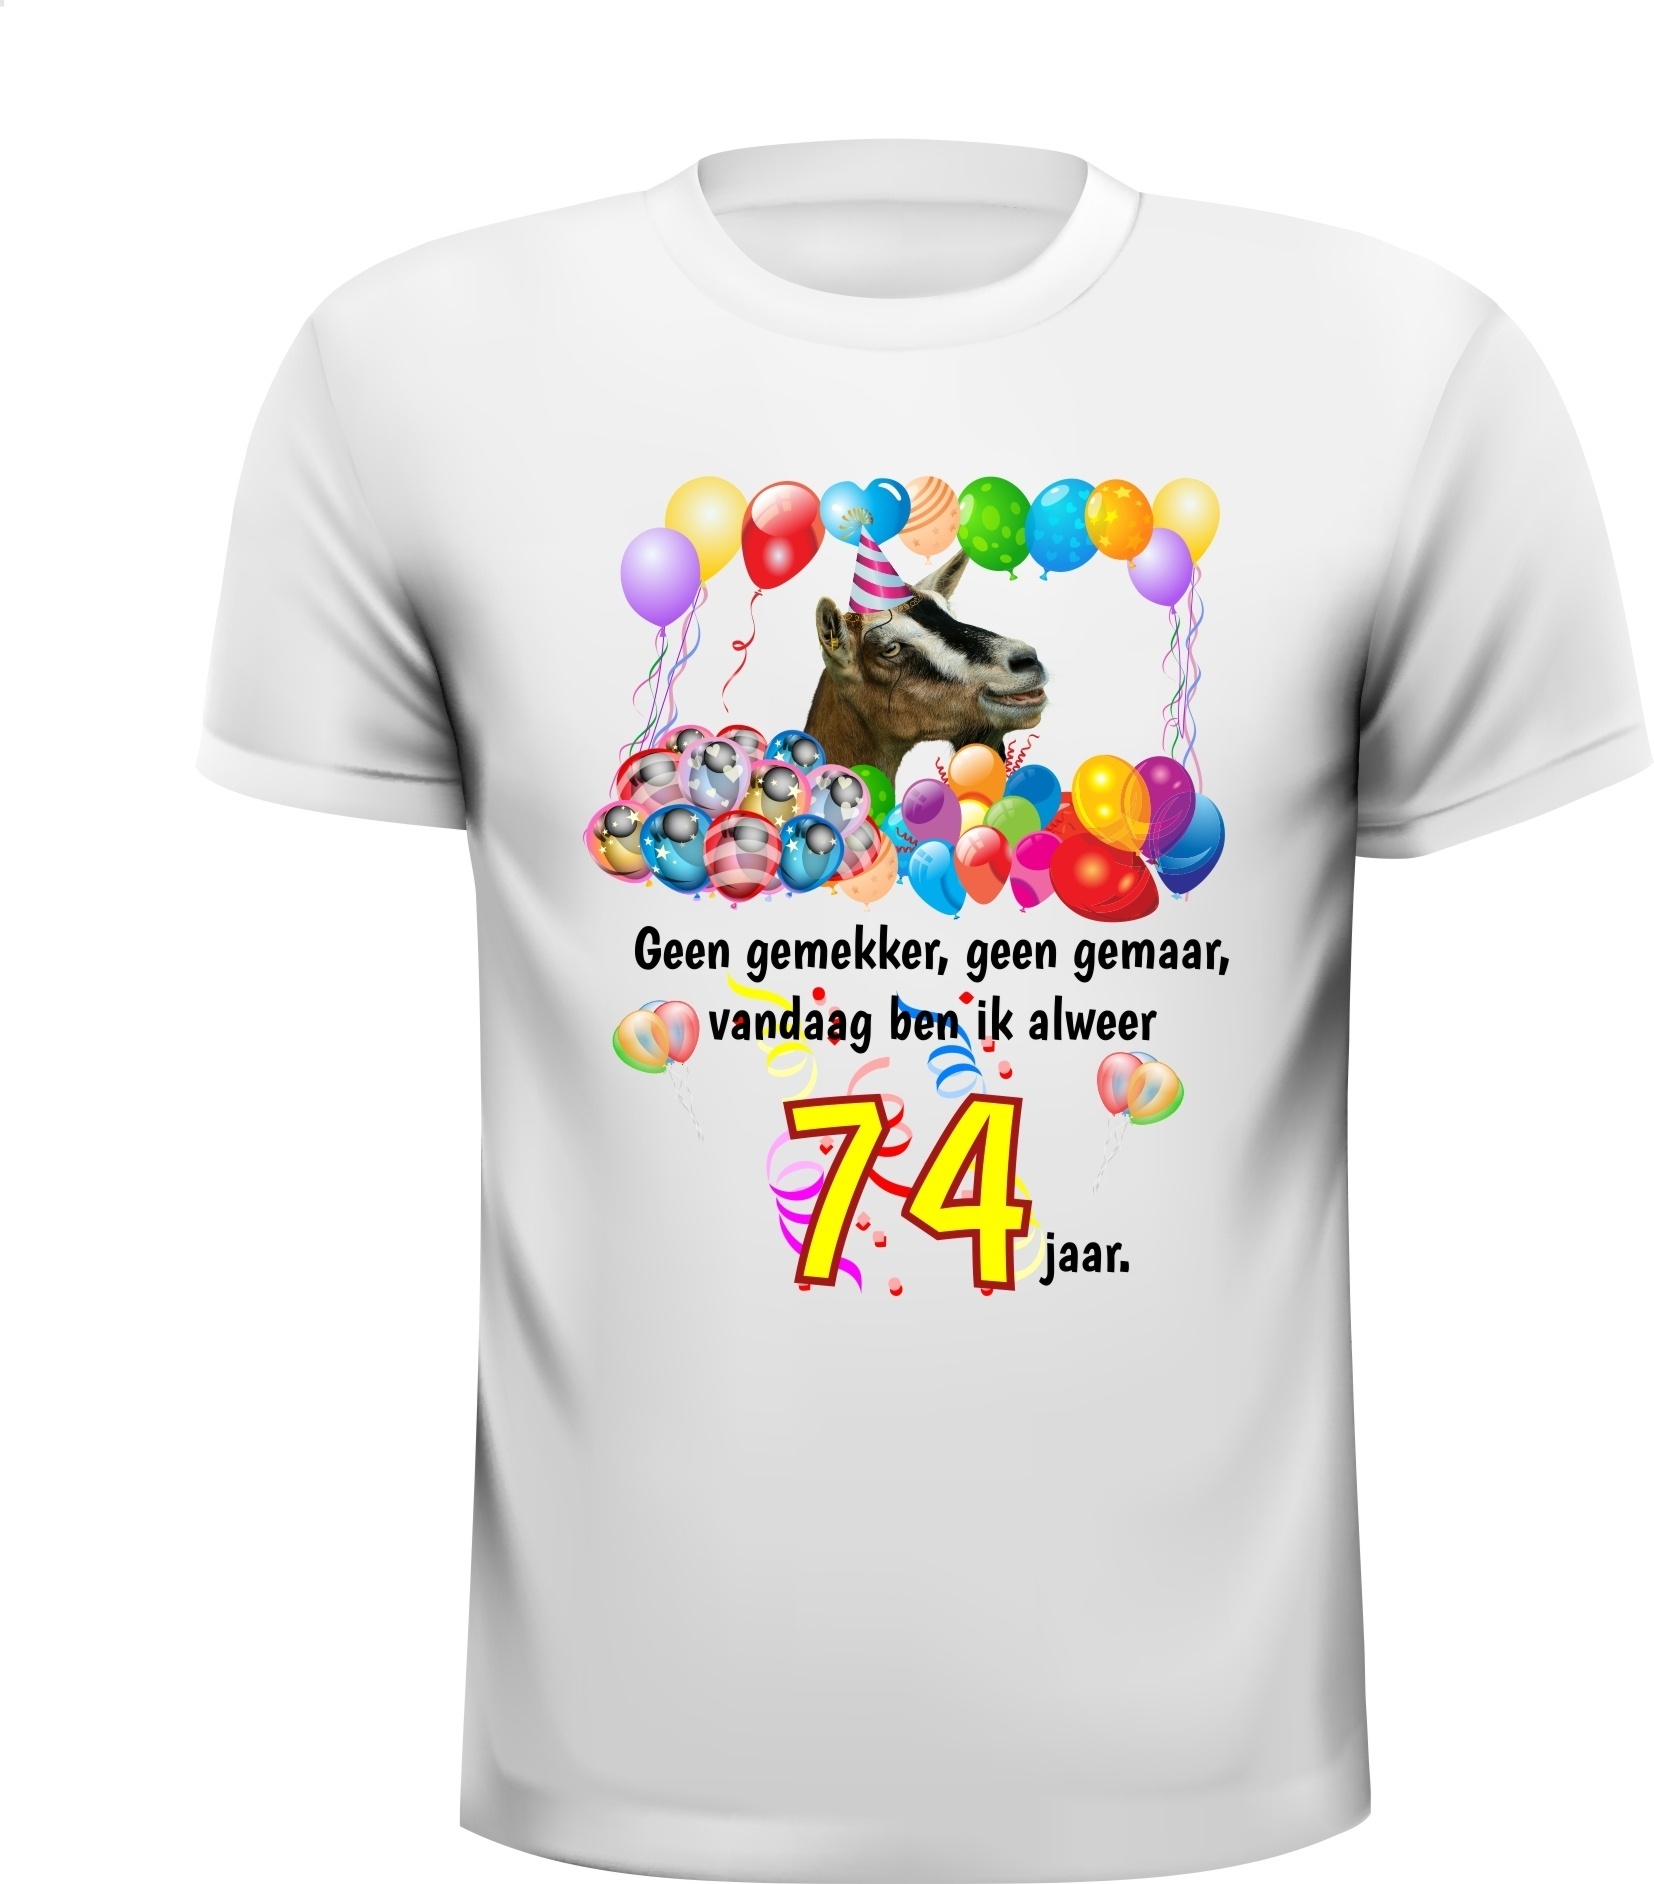 Feestelijk verjaardag shirt voor een leeftijd van 74 jaar met grappige tekst en print